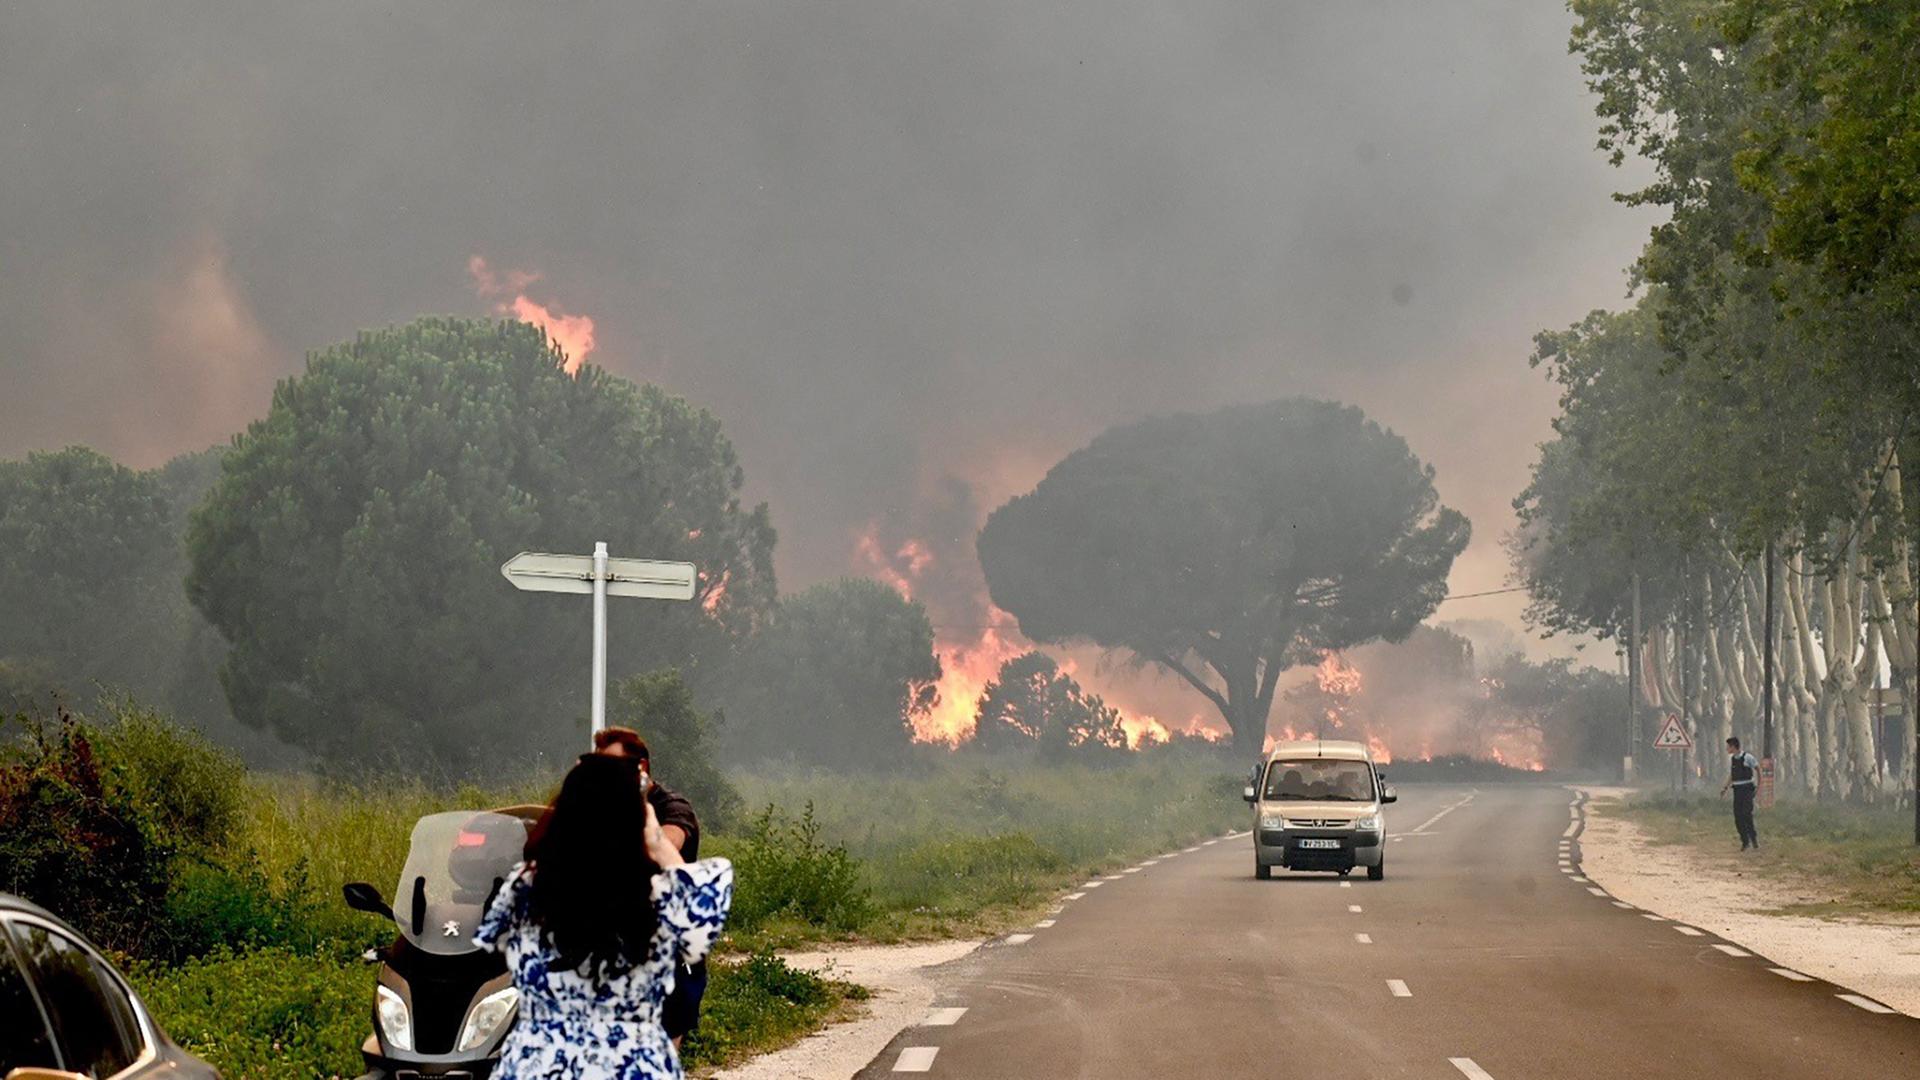 Blick auf ein brennendes Waldstück. Ein Auto fährt in Richtung der Kamera, um aus der Gefahrenzone zu gelangen. Am Straßenrand steht eine Frau, die aus der Entfernung ein Foto von dem Feuer schießt.